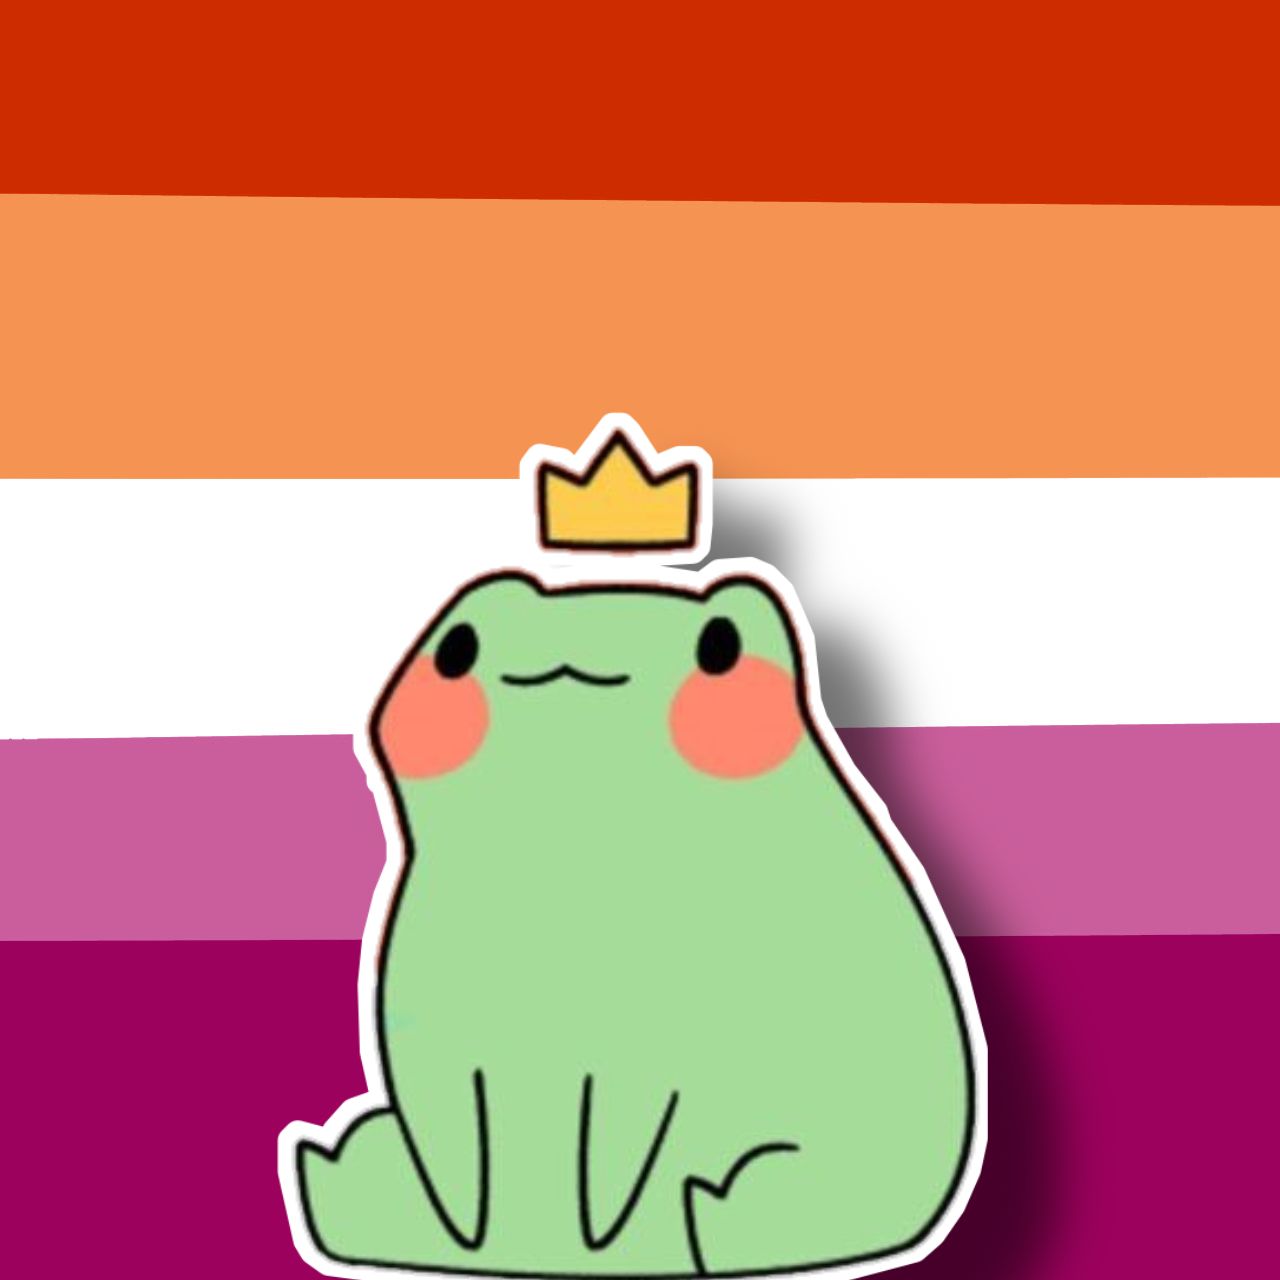 Lesbian frog icon. Icon, Lesbian, Lgbtq